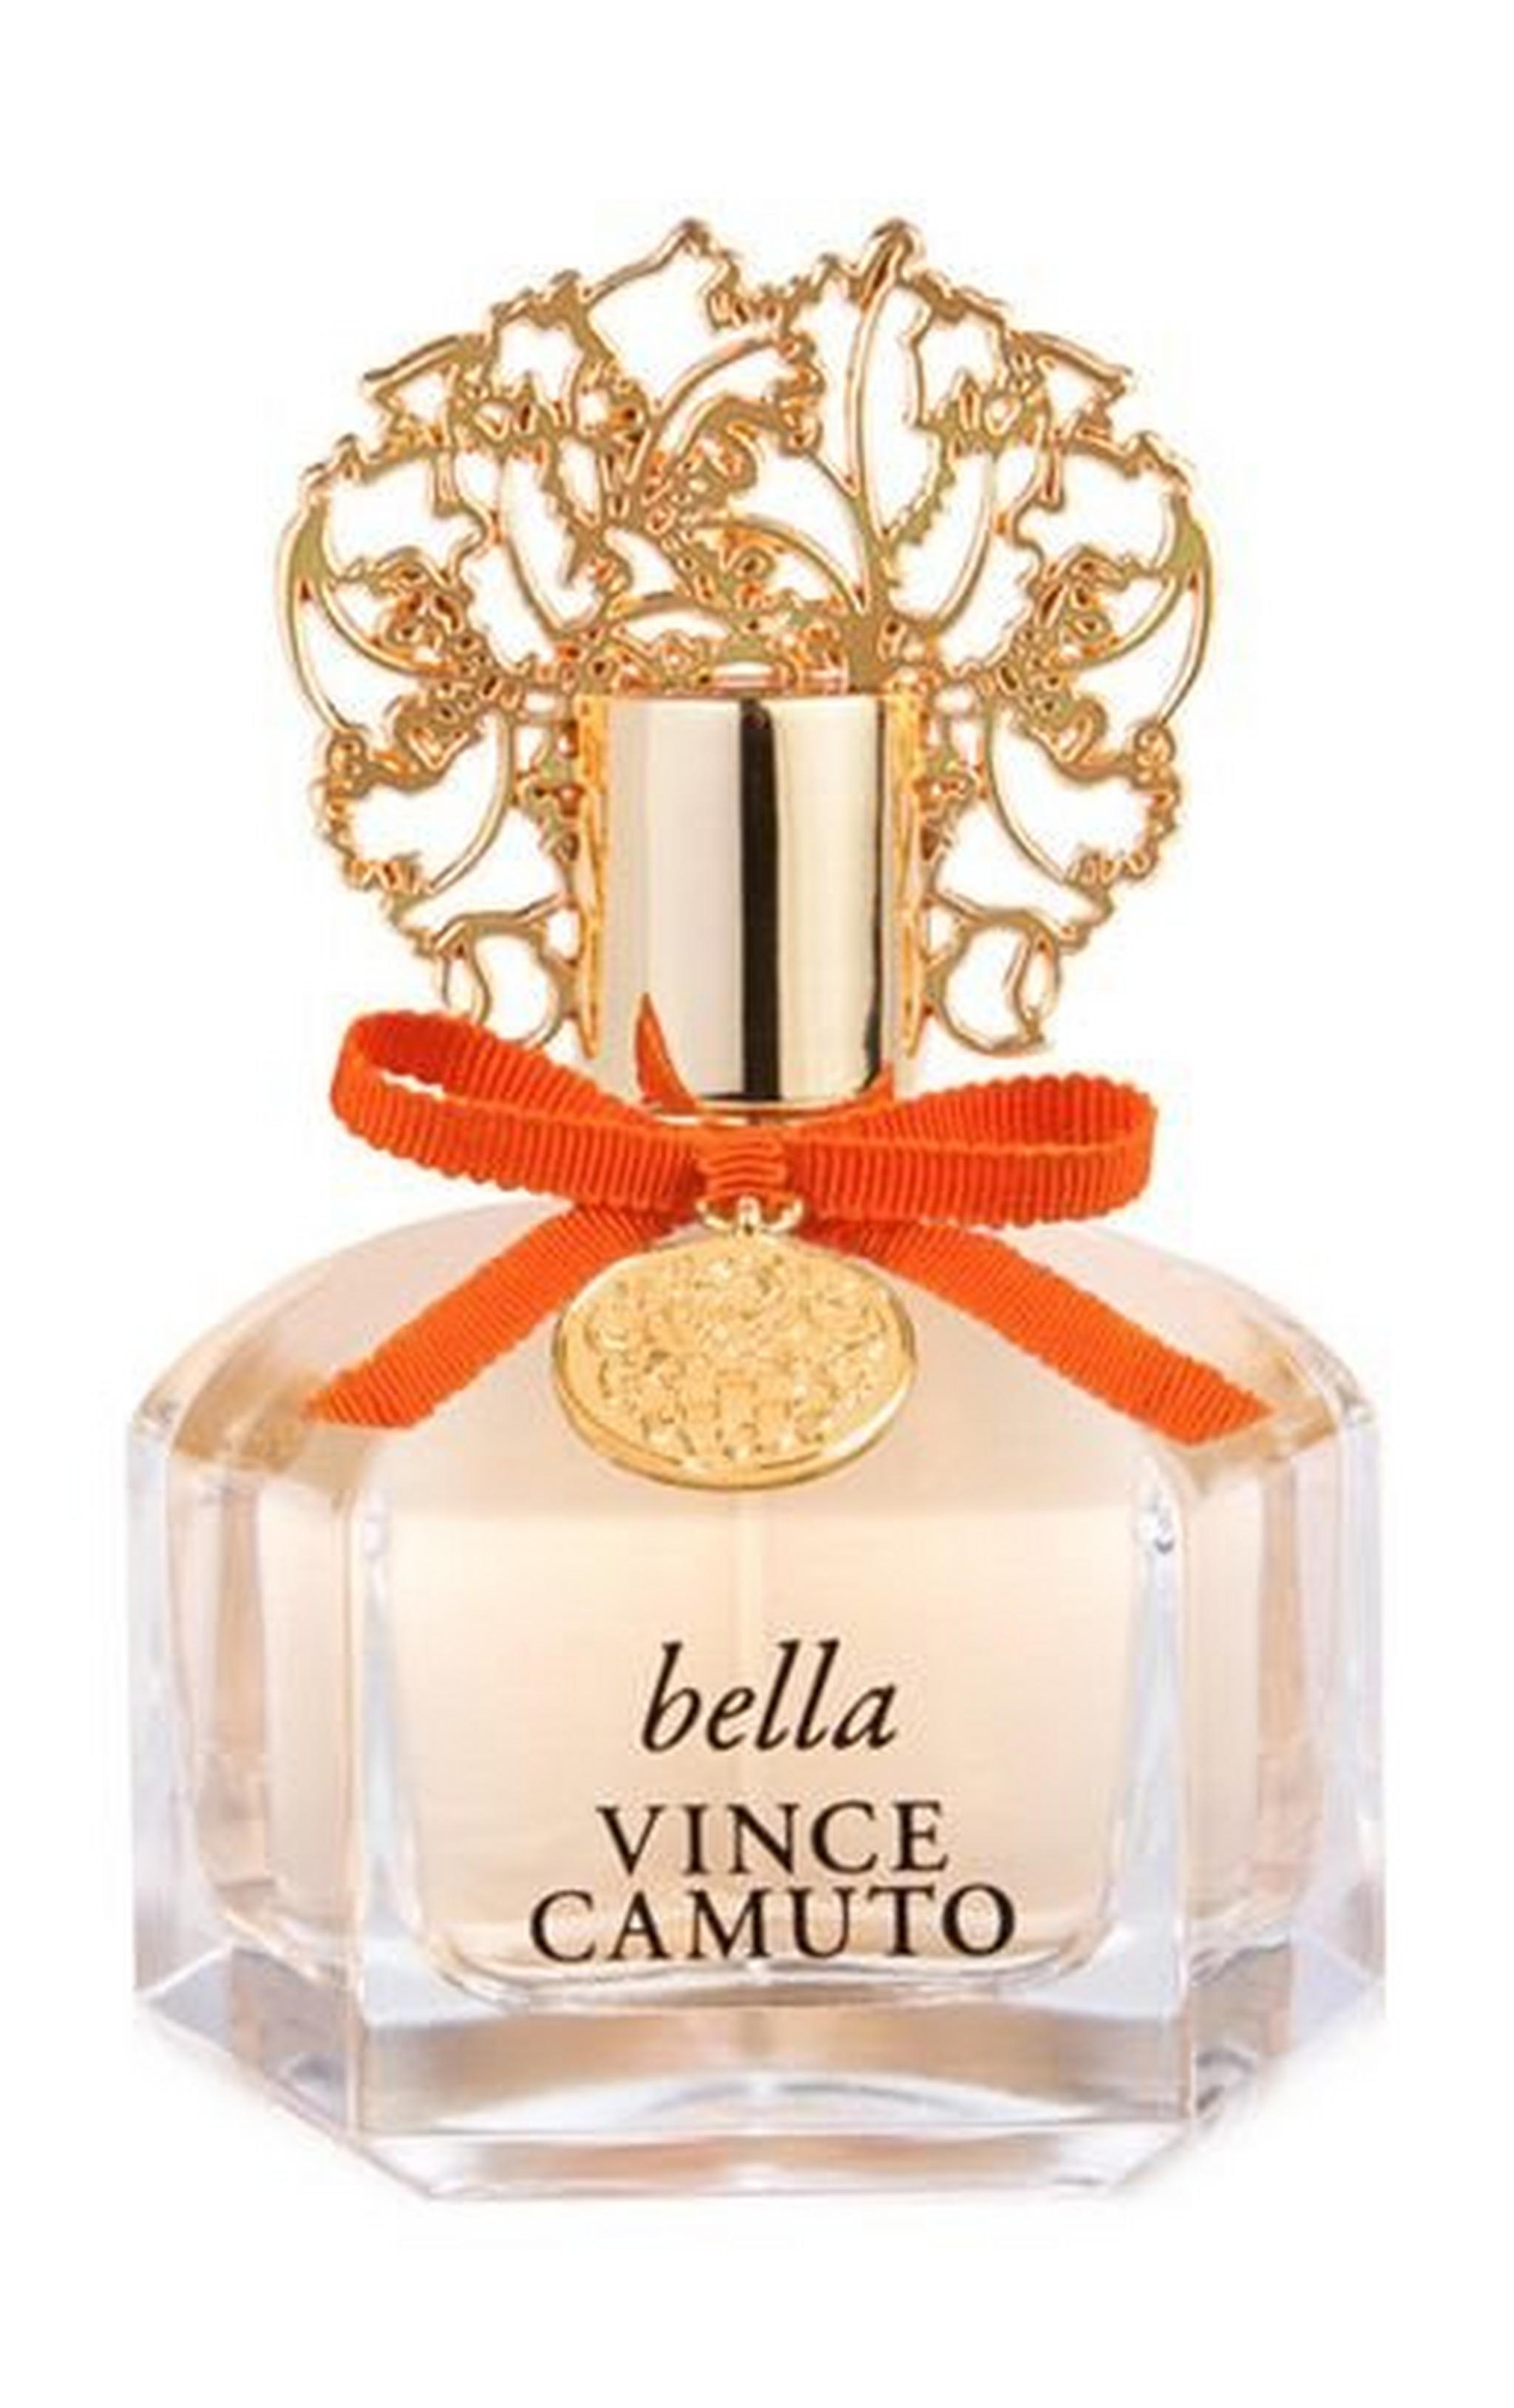 Bella by Vince Camuto For Women 100ml Eau de Parfum